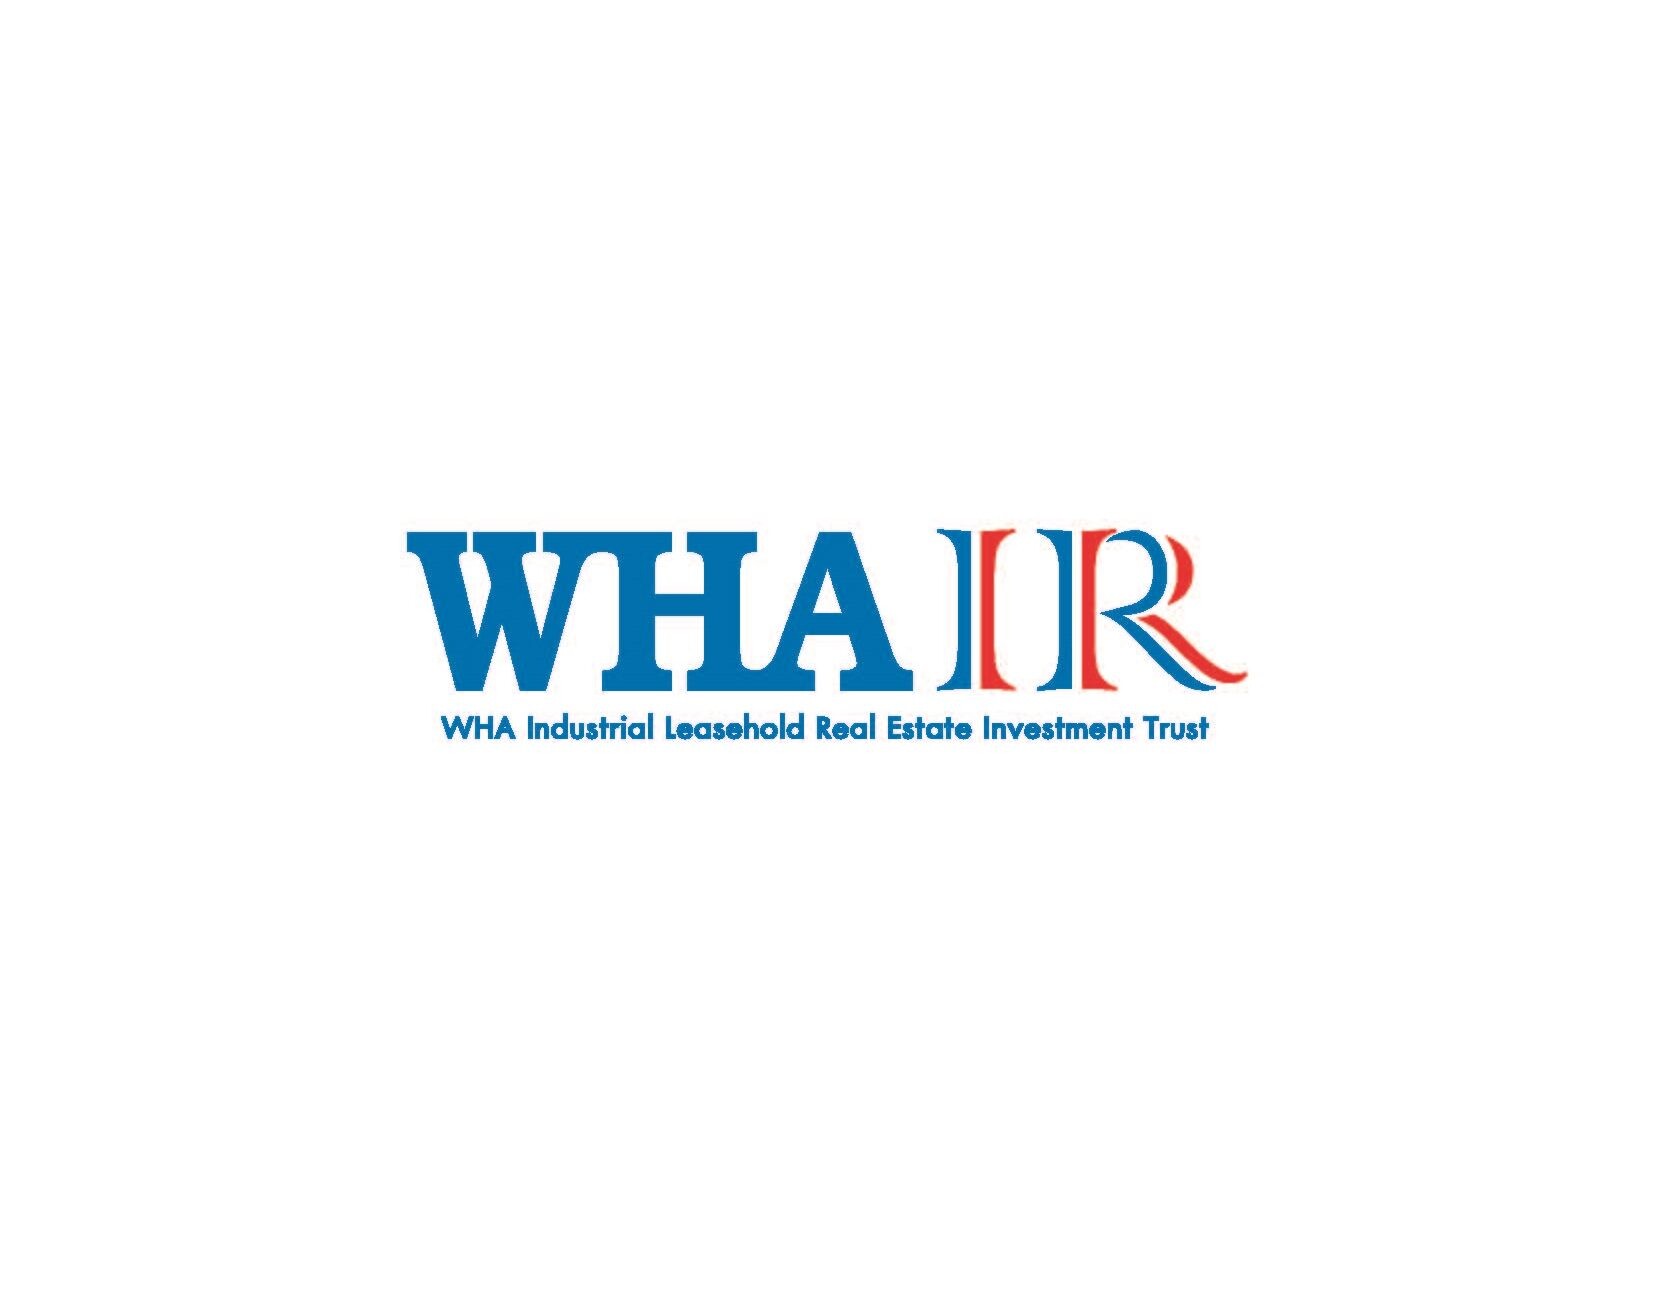 "กองทรัสต์ HREIT" เปลี่ยนชื่อใหม่เป็น "กองทรัสต์ WHAIR" ดีเดย์วันนี้(8 มิ.ย.) ประกาศเดินหน้าลงทุนเพิ่มครั้งที่ 4 มูลค่าไม่เกิน 1,345.89 ล้านบาท